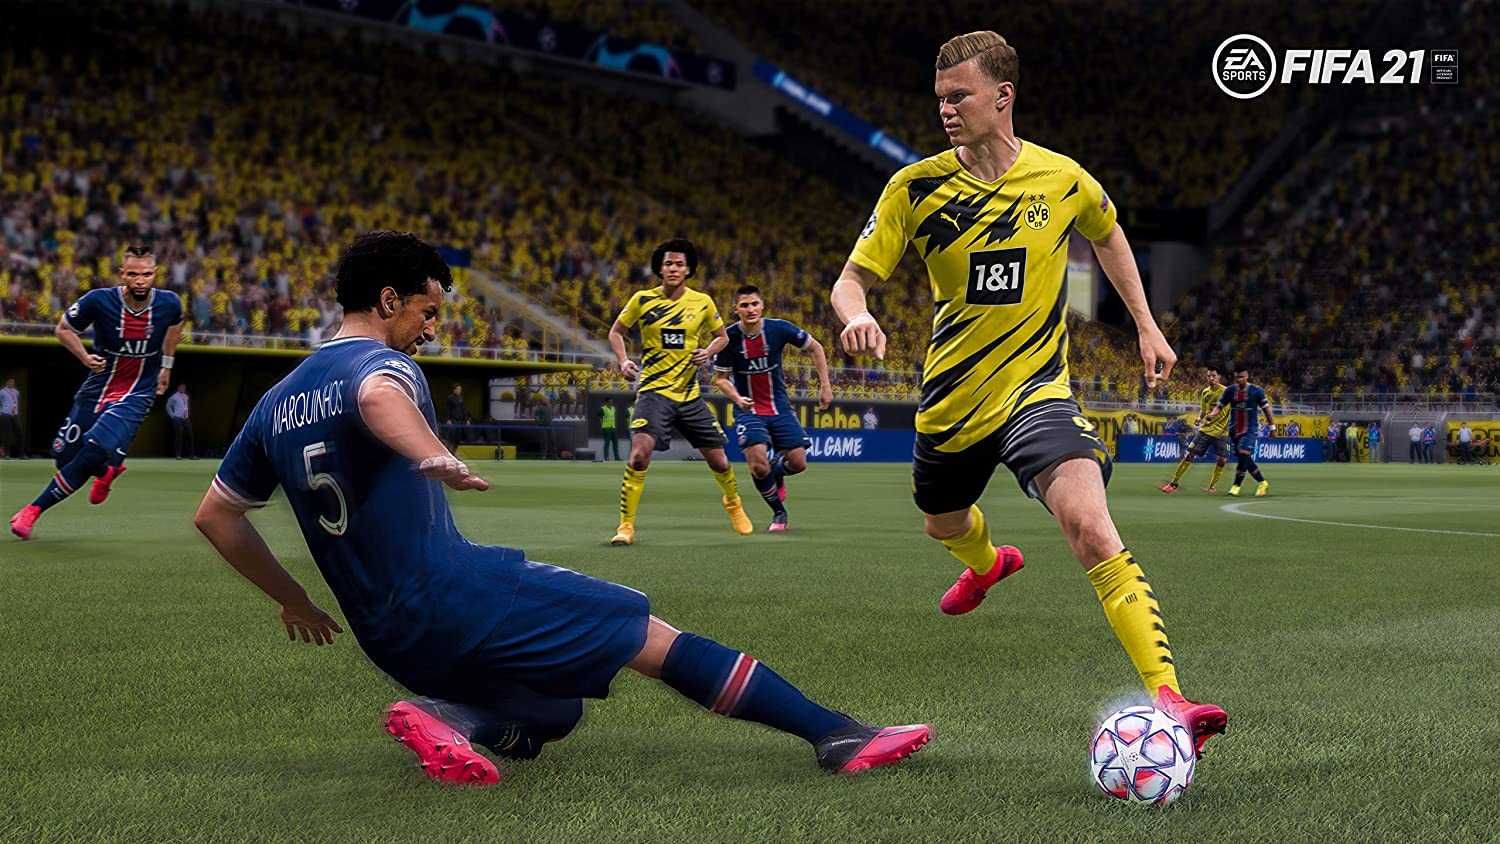 FIFA 21 - NXT LVL Edition PS5 - piłka nożna, limitowana okładka